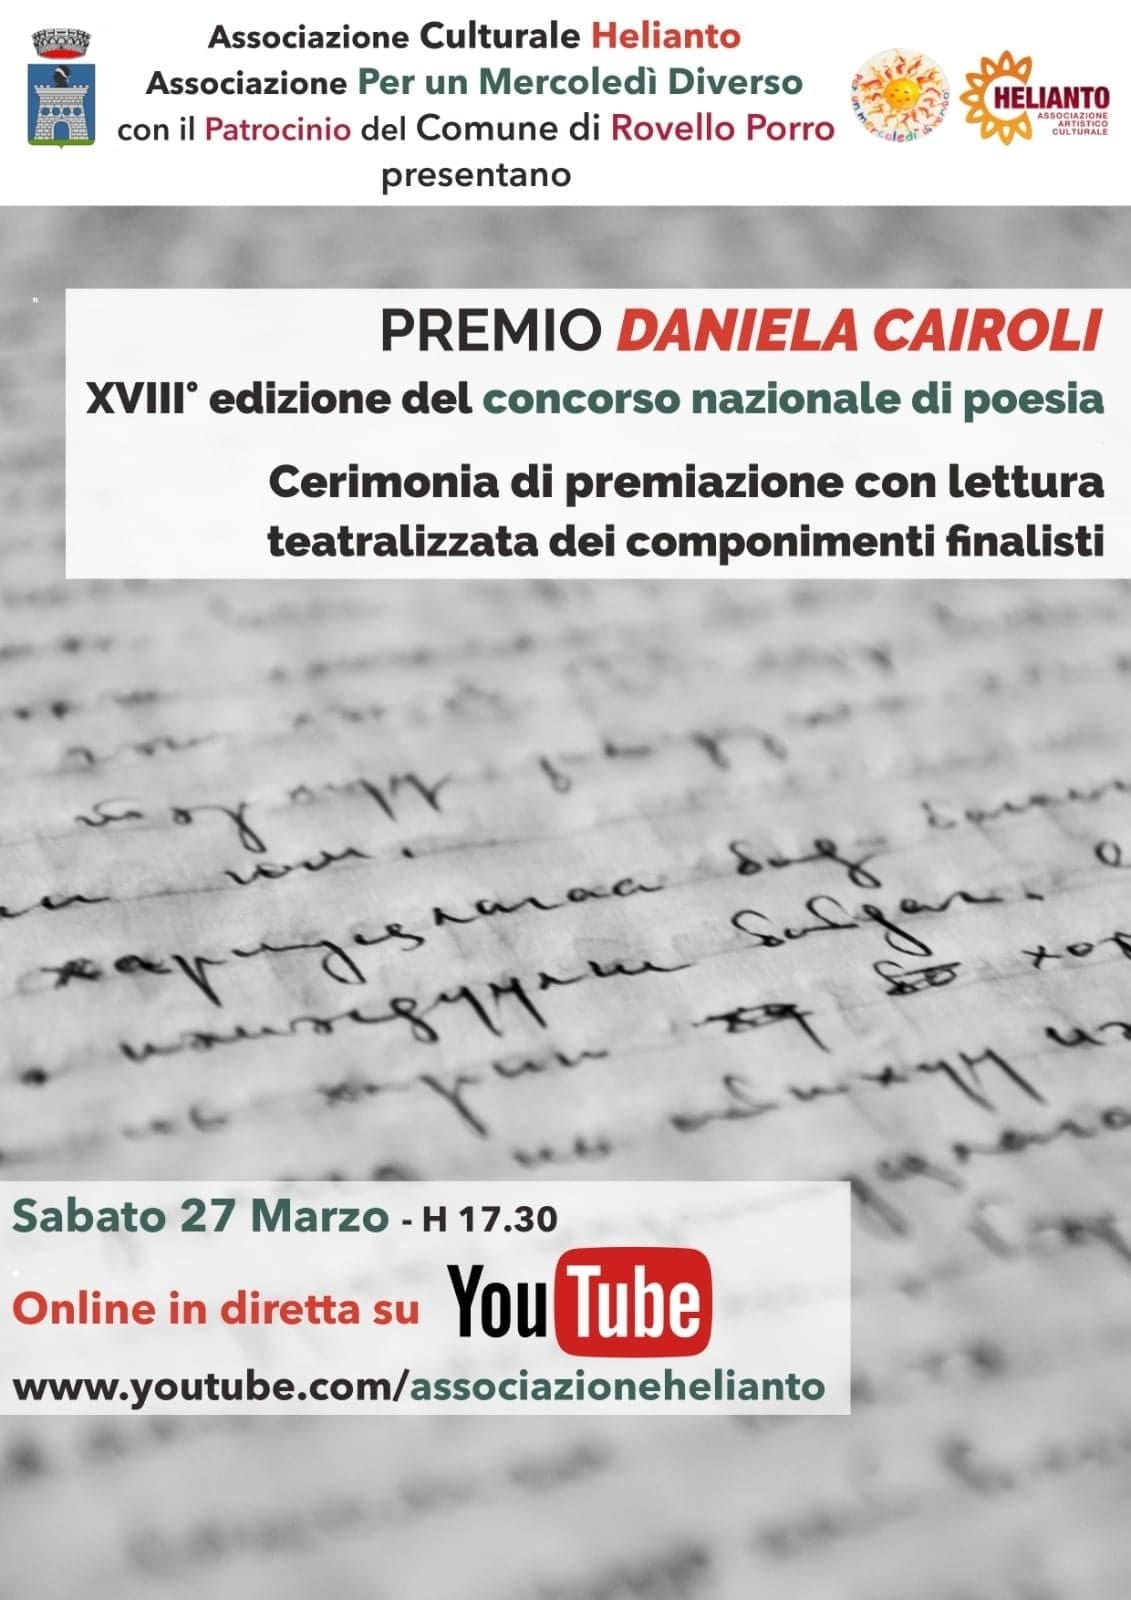 Rovello Porro, lettura online delle poesie finaliste al concorso nazionale di poesia Daniela Cairoli